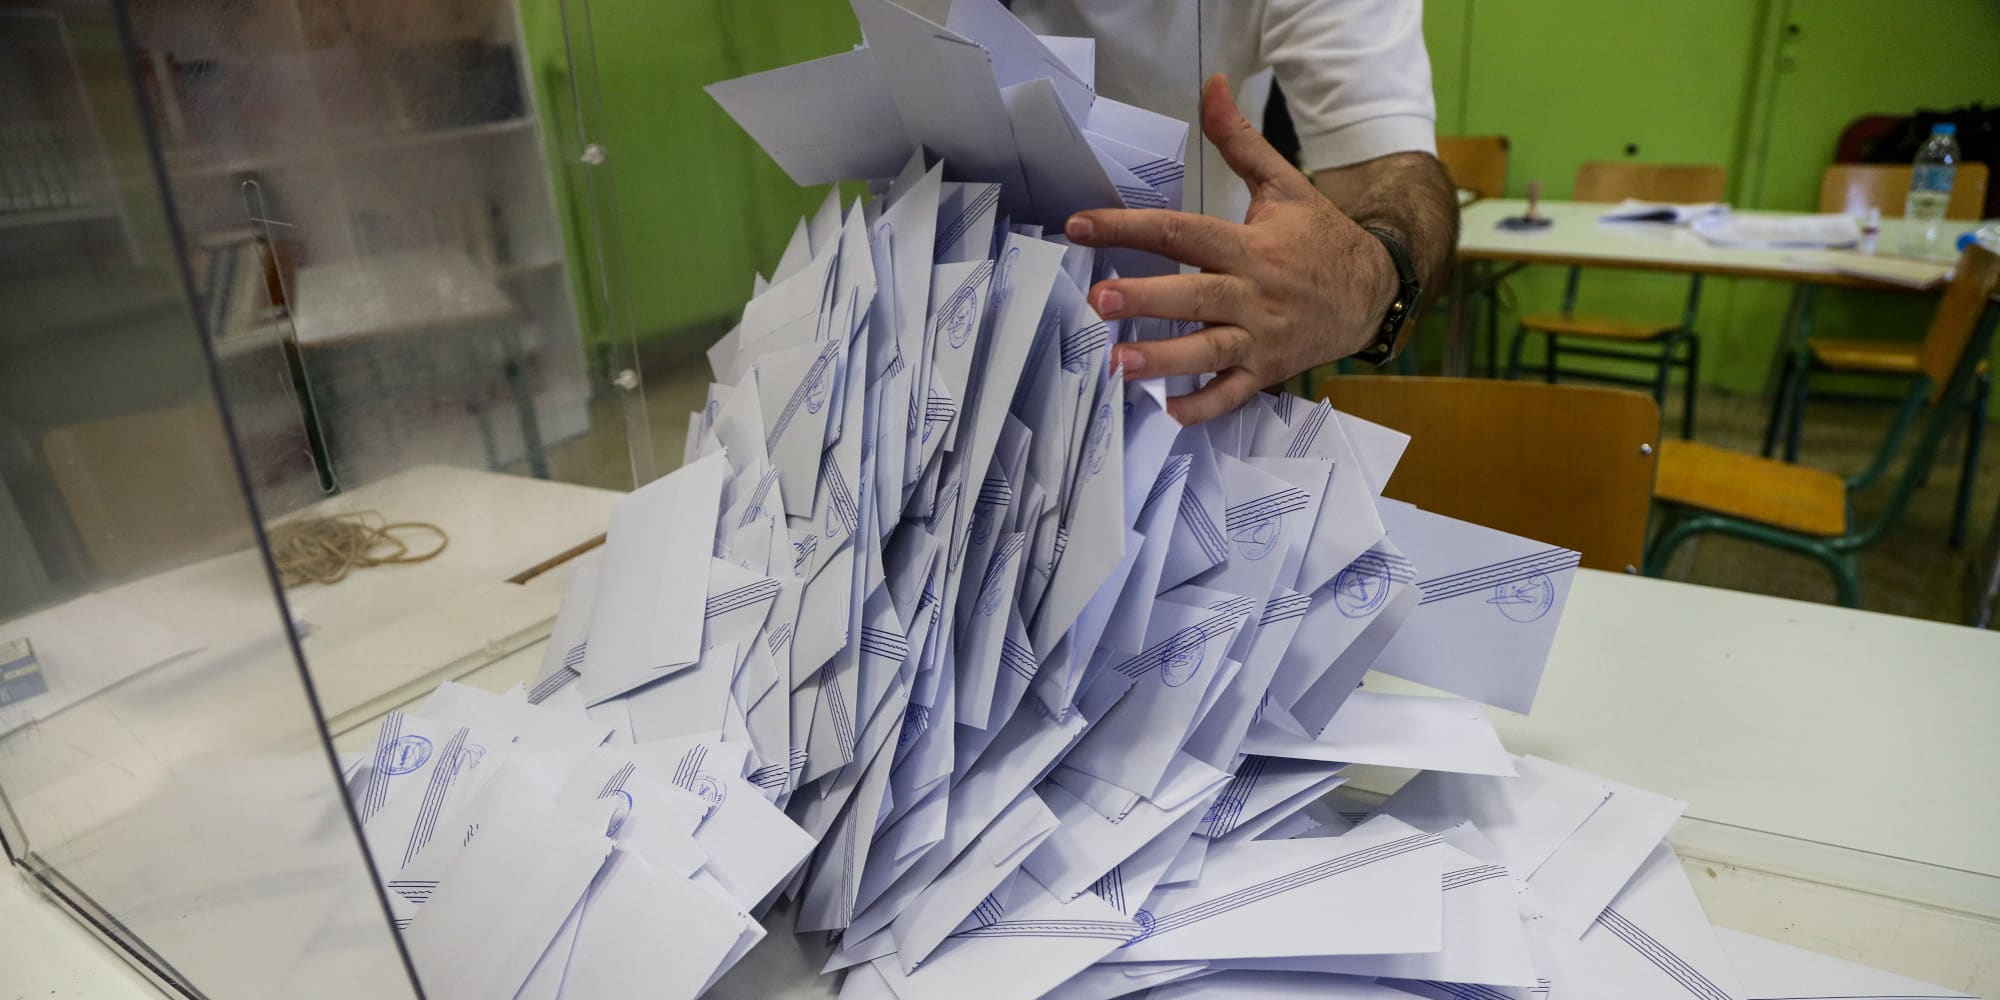 Μάθετε πρώτοι τα αποτελέσματα των εκλογών στην Θεσπρωτία